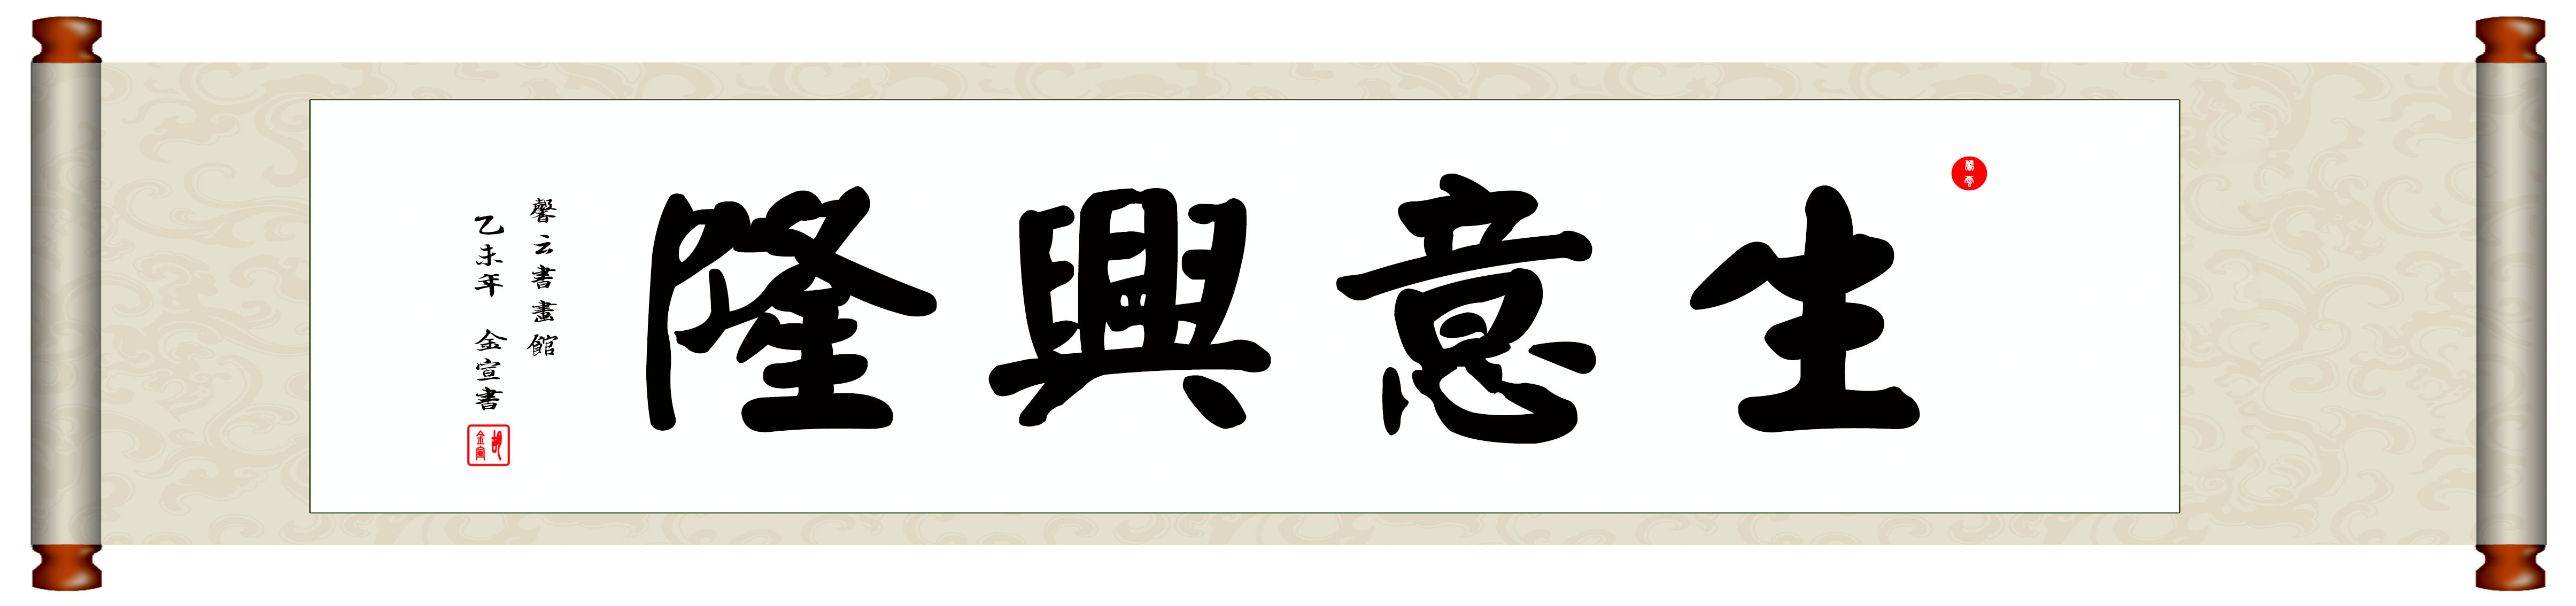 中国书法毛笔字画/装裱挂轴/仿颜真卿手写真迹/生意兴隆